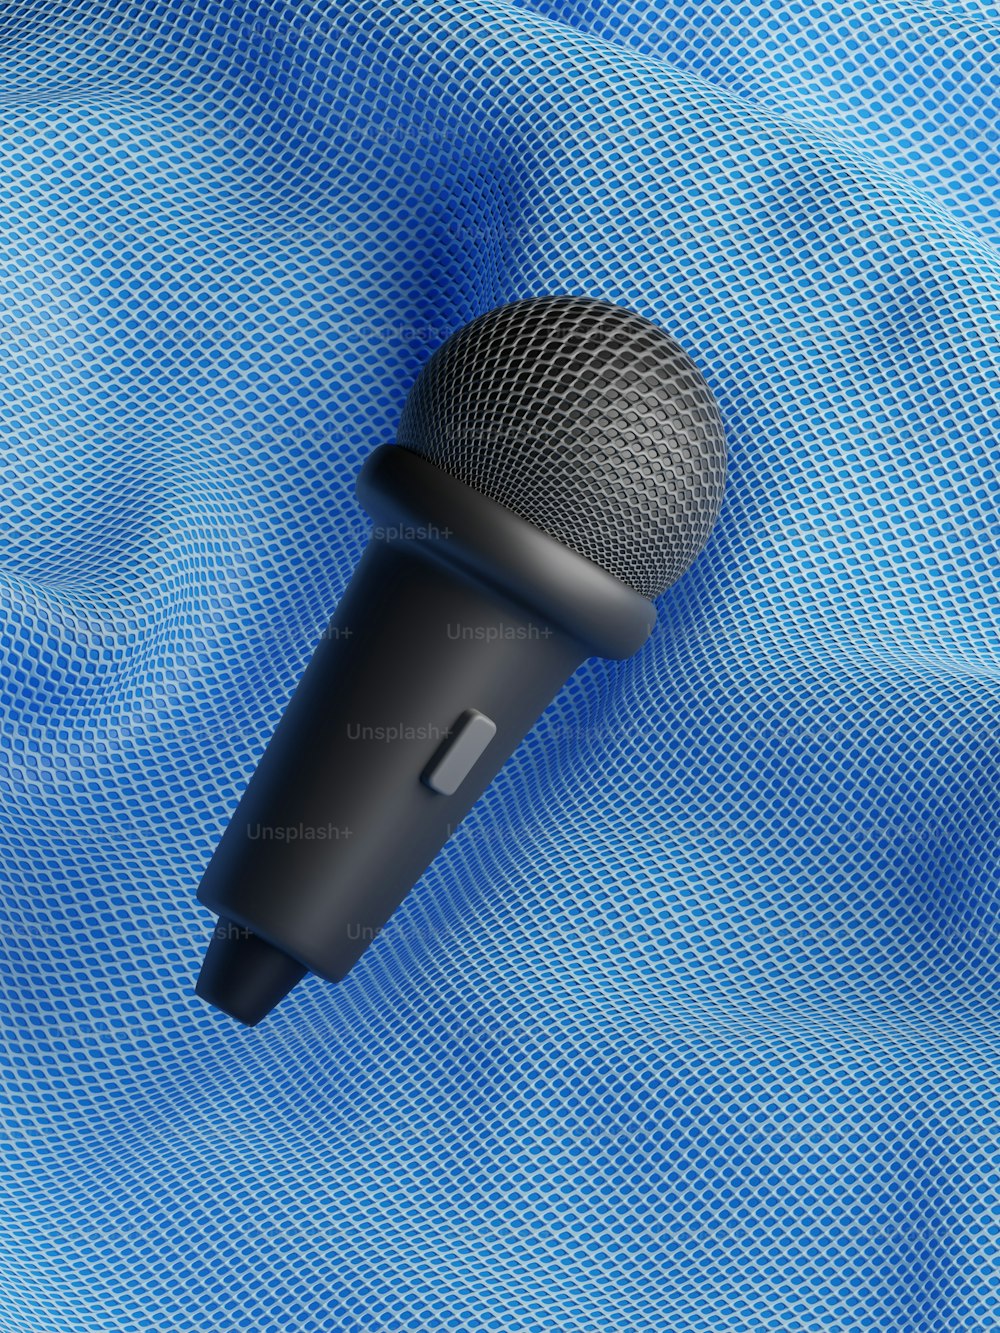 Un micrófono negro sobre fondo azul